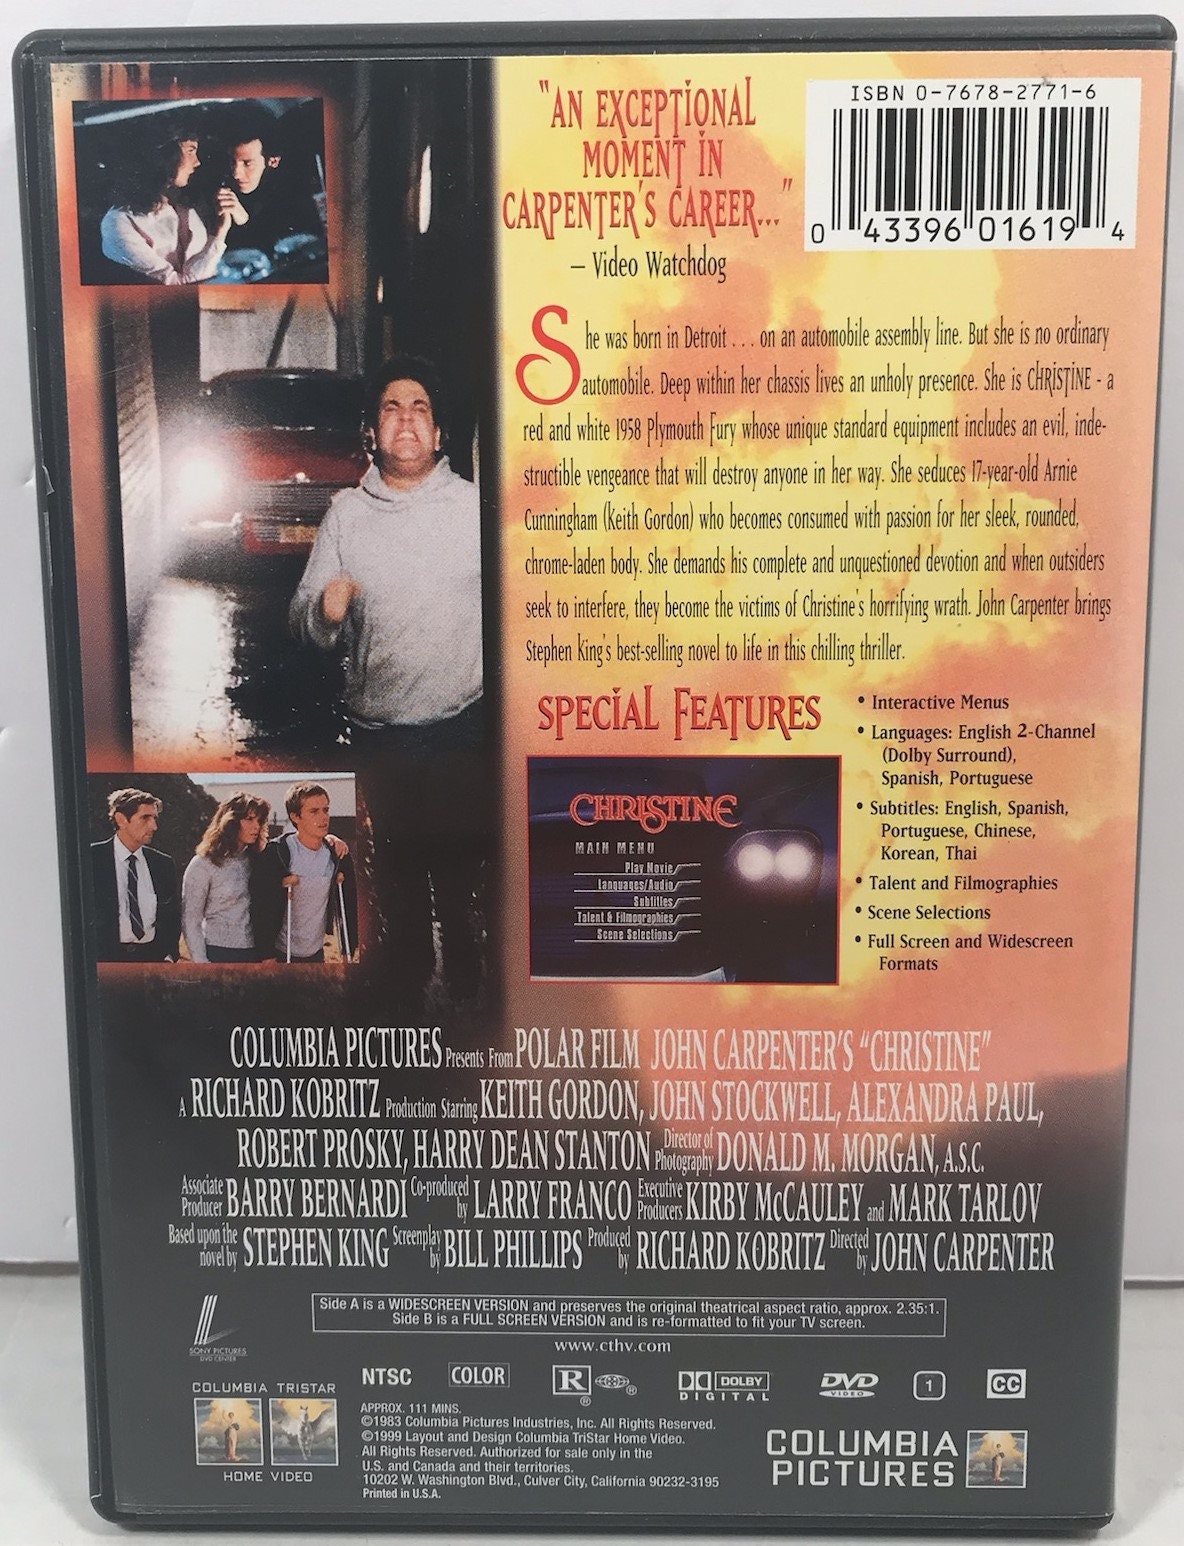 DVD screensaver - Pudyz - Folioscope